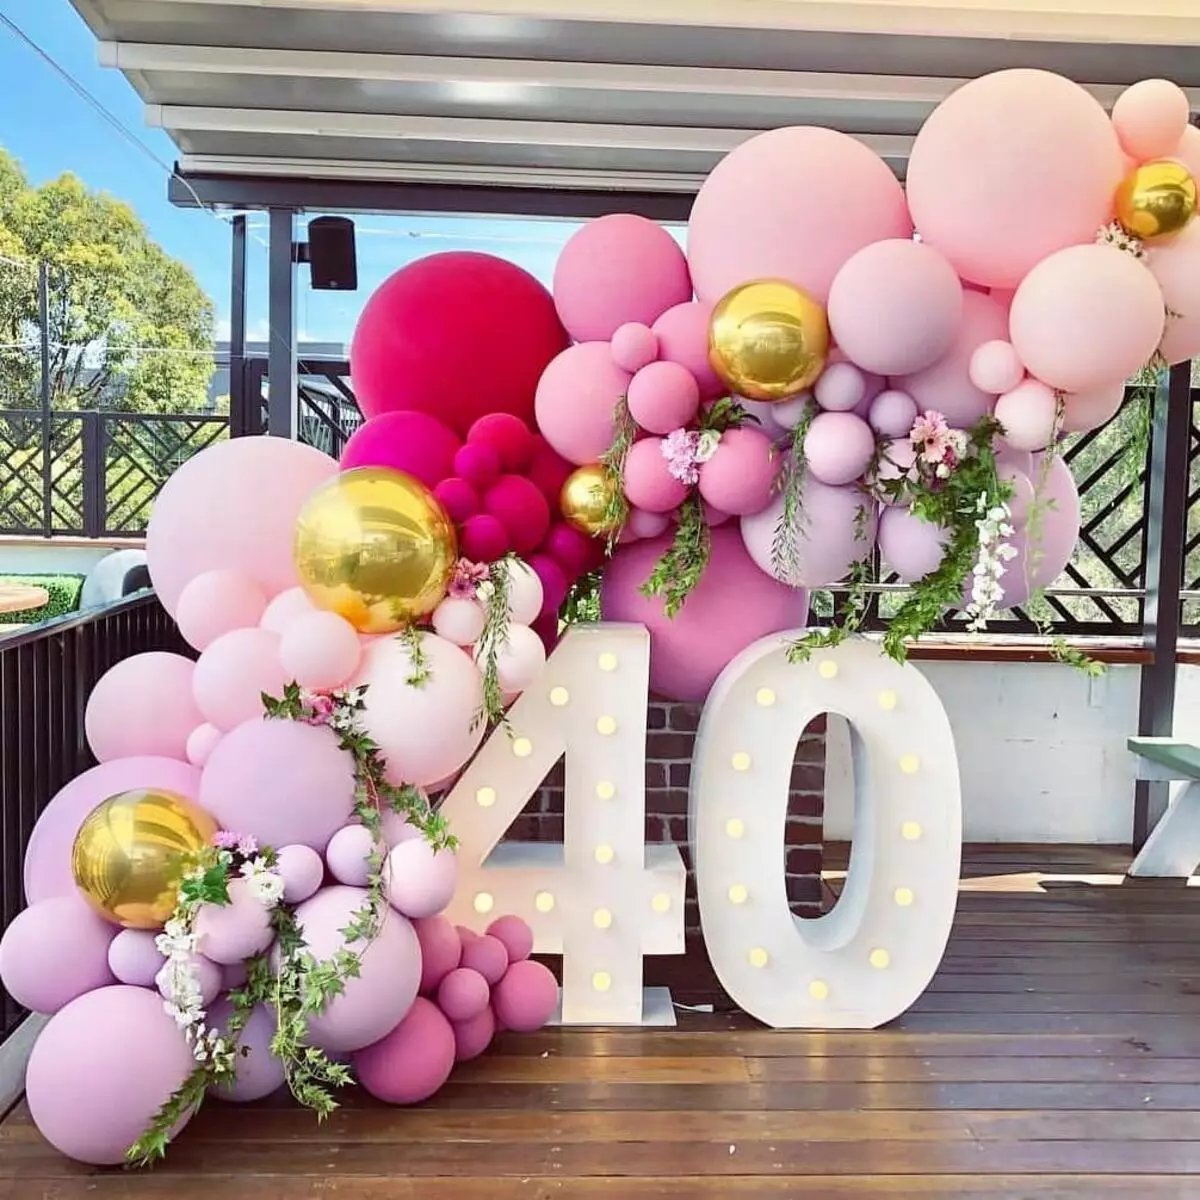 Zāles dekorēšana ar bumbiņām uz jubileju: sievietei un vīriešiem uz gadadienu 50 un 60, 30 un 35, 70 gadus veci un citos datumos ar baloniem 24641_6